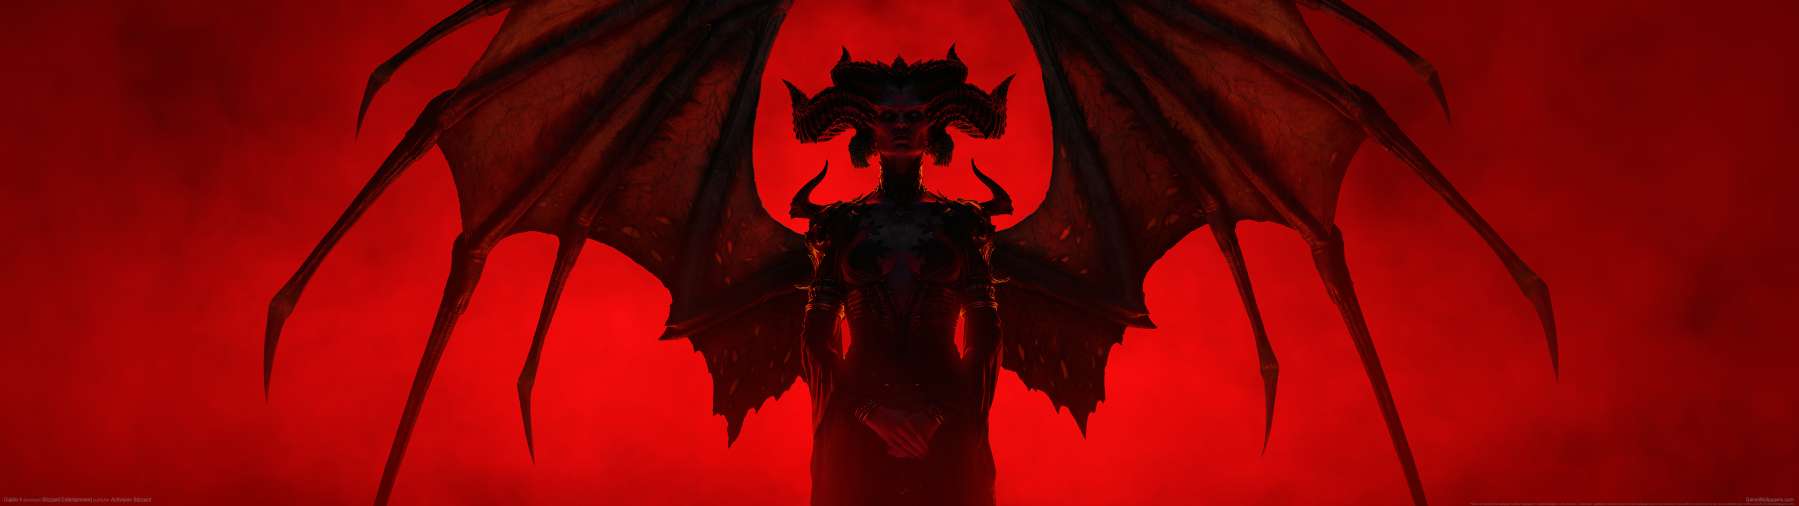 Diablo 4 superwide achtergrond 14